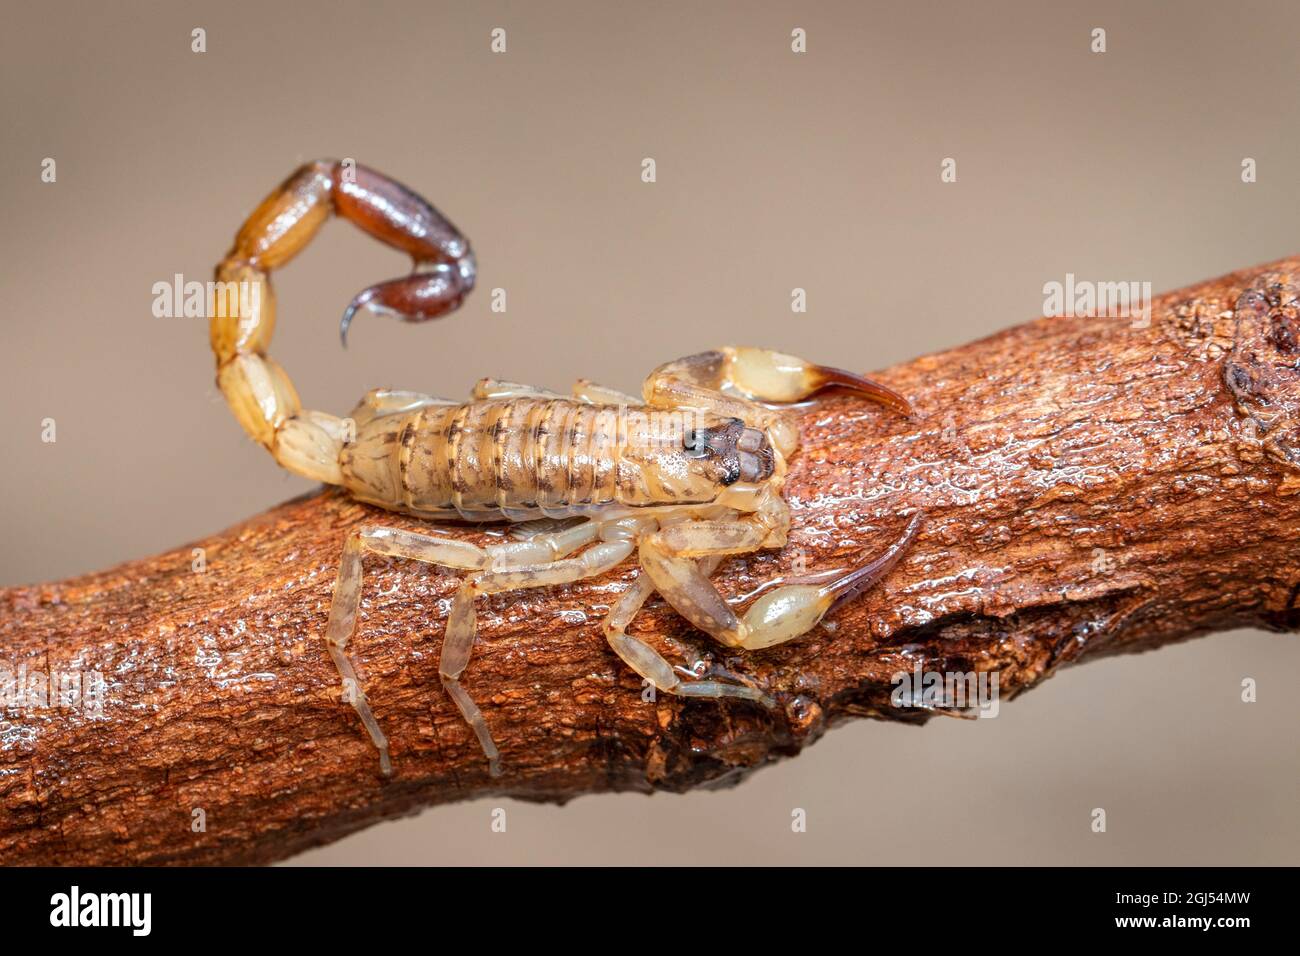 Bild eines braunen Skorpions auf einem braunen trockenen Baumzweig. Insekt. Tier. Stockfoto